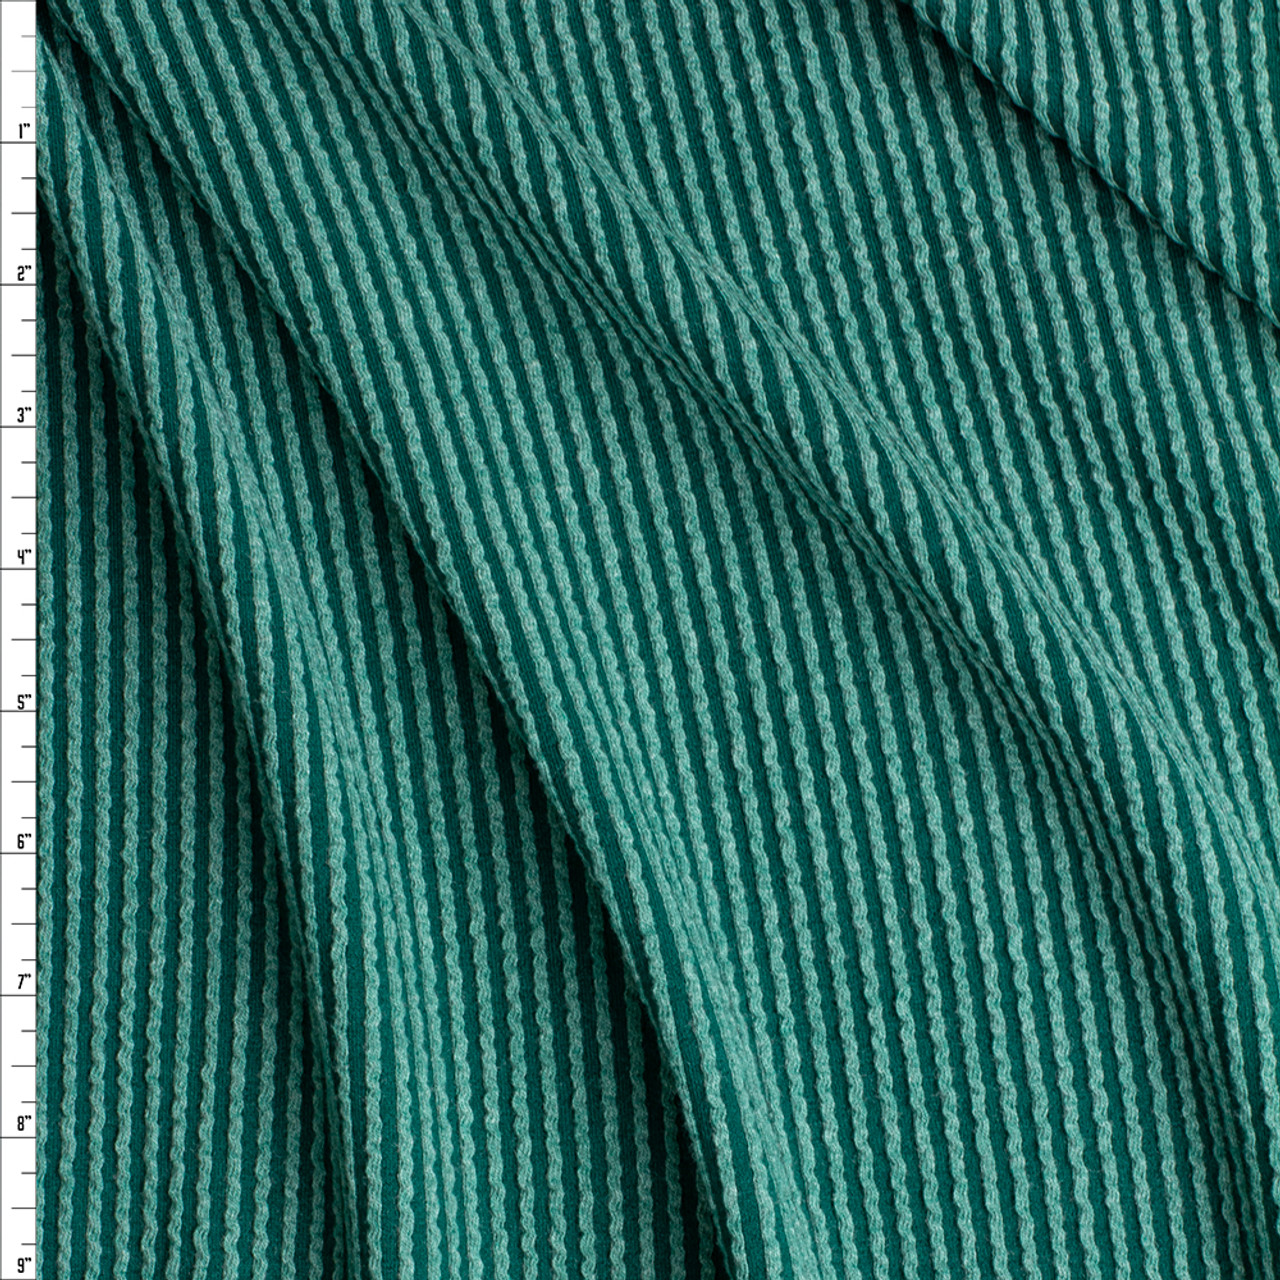 Cali Fabrics Emerald Green Stretch Wavy Rib Knit #26973 Fabric by